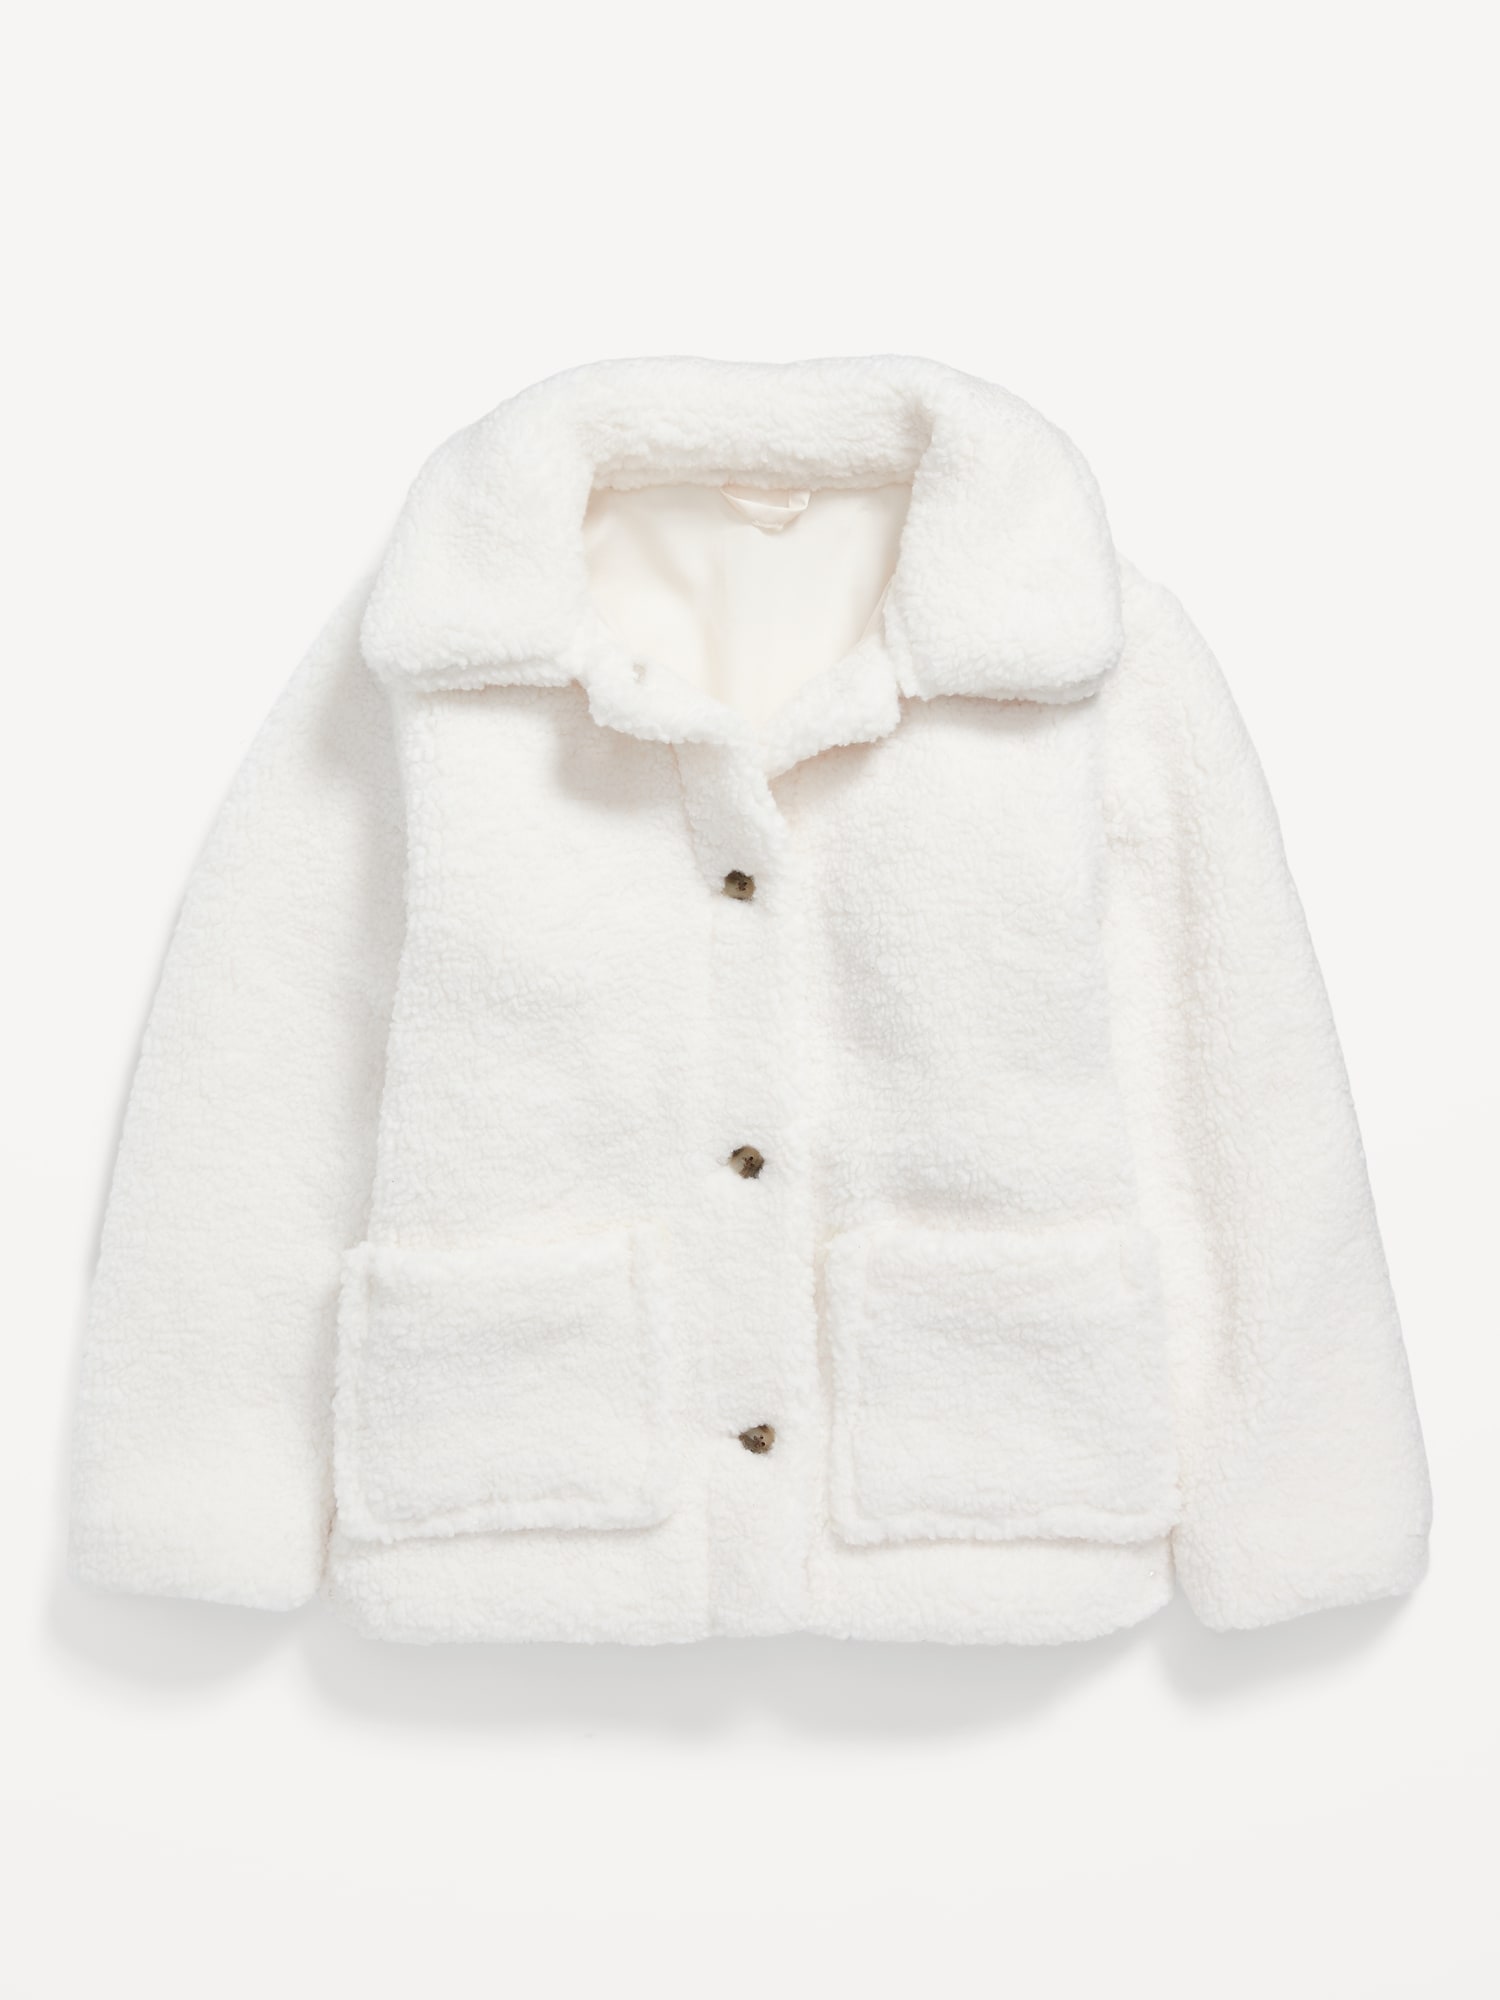 Entyinea Girl's Cozy Sherpa Jacket Cardigan Jacket Warm Outwear